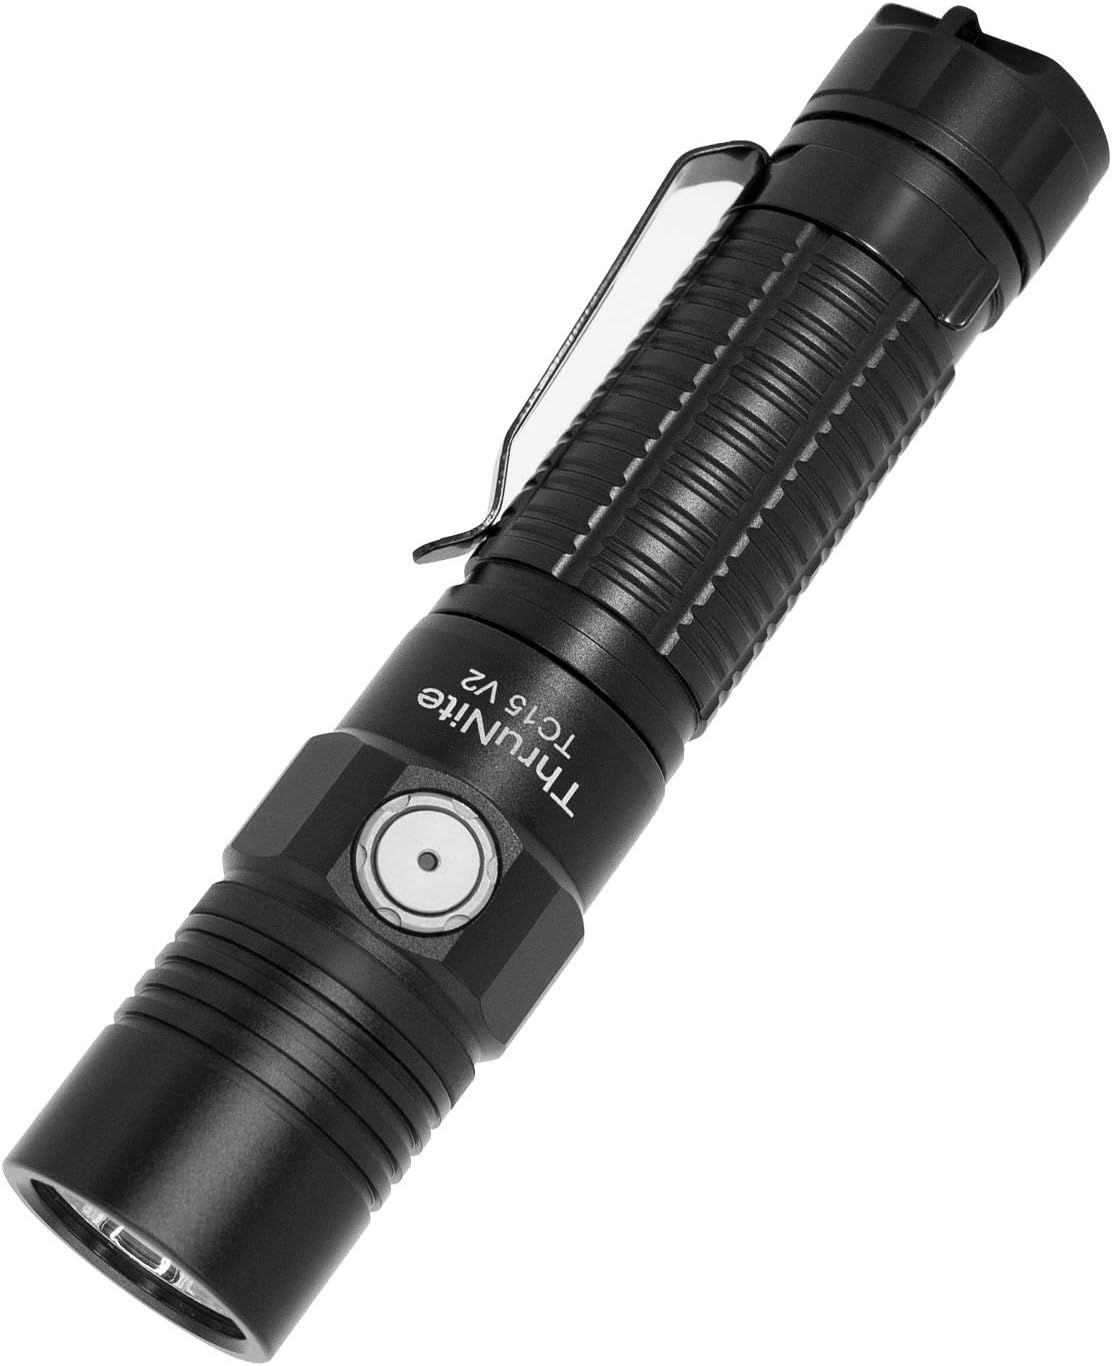 ThruNite TC15 2300 High Lumens Ultra-Bright Flashlight, USB Rechargeable NW LED Handheld Flashlig... | Amazon (US)